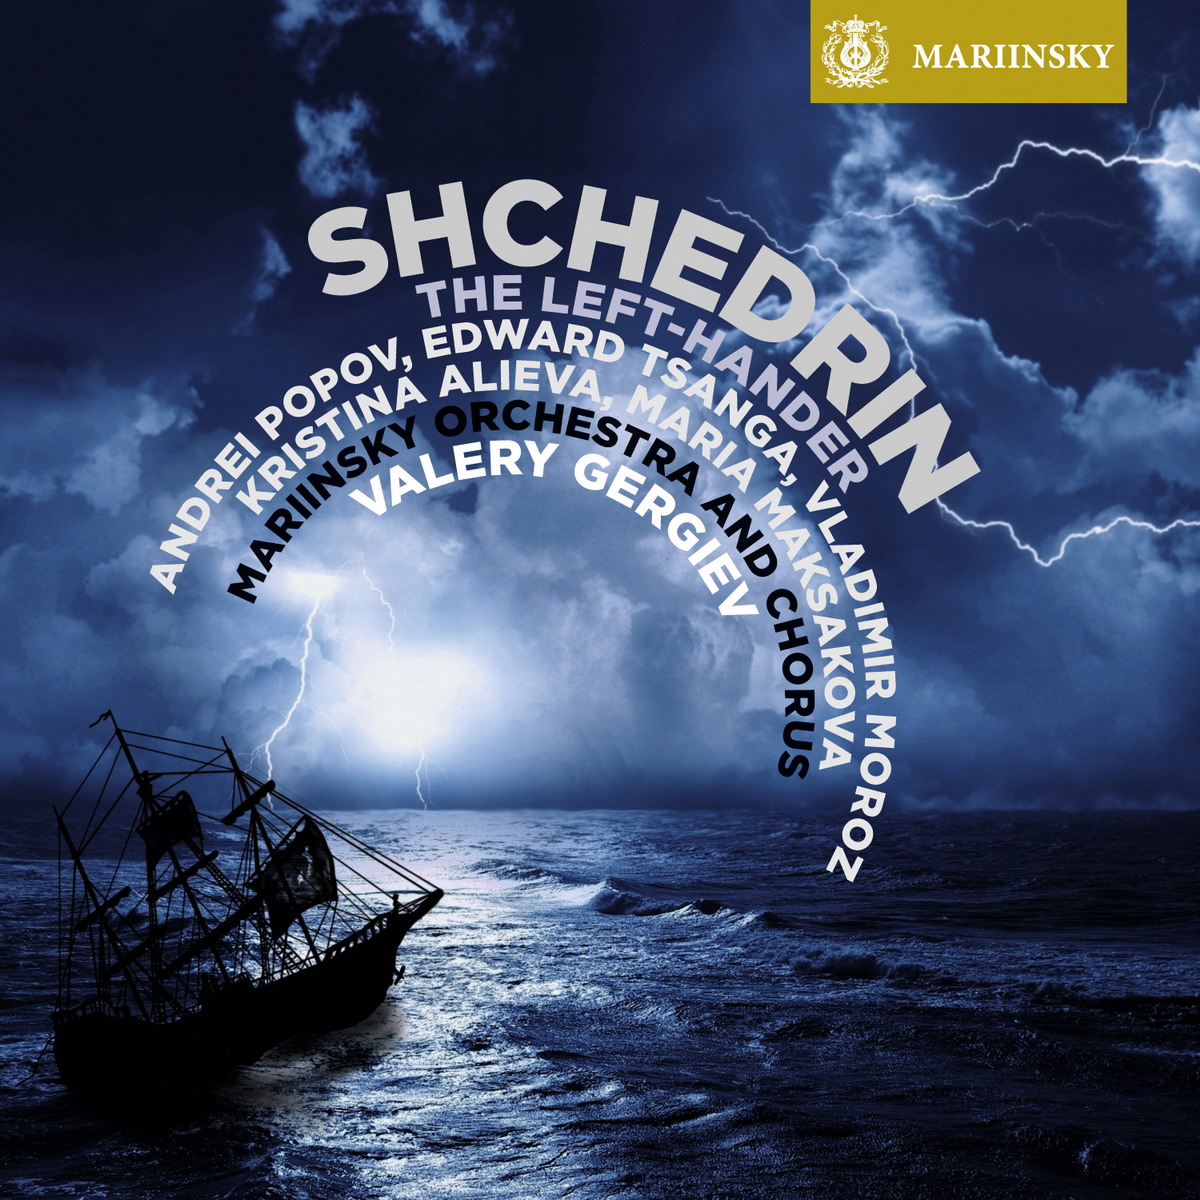 Valery Gergiev, Mariinsky Orchestra & Chorus - Shchedrin: The Left-Hander (2015) [Qobuz FLAC 24bit/96kHz]